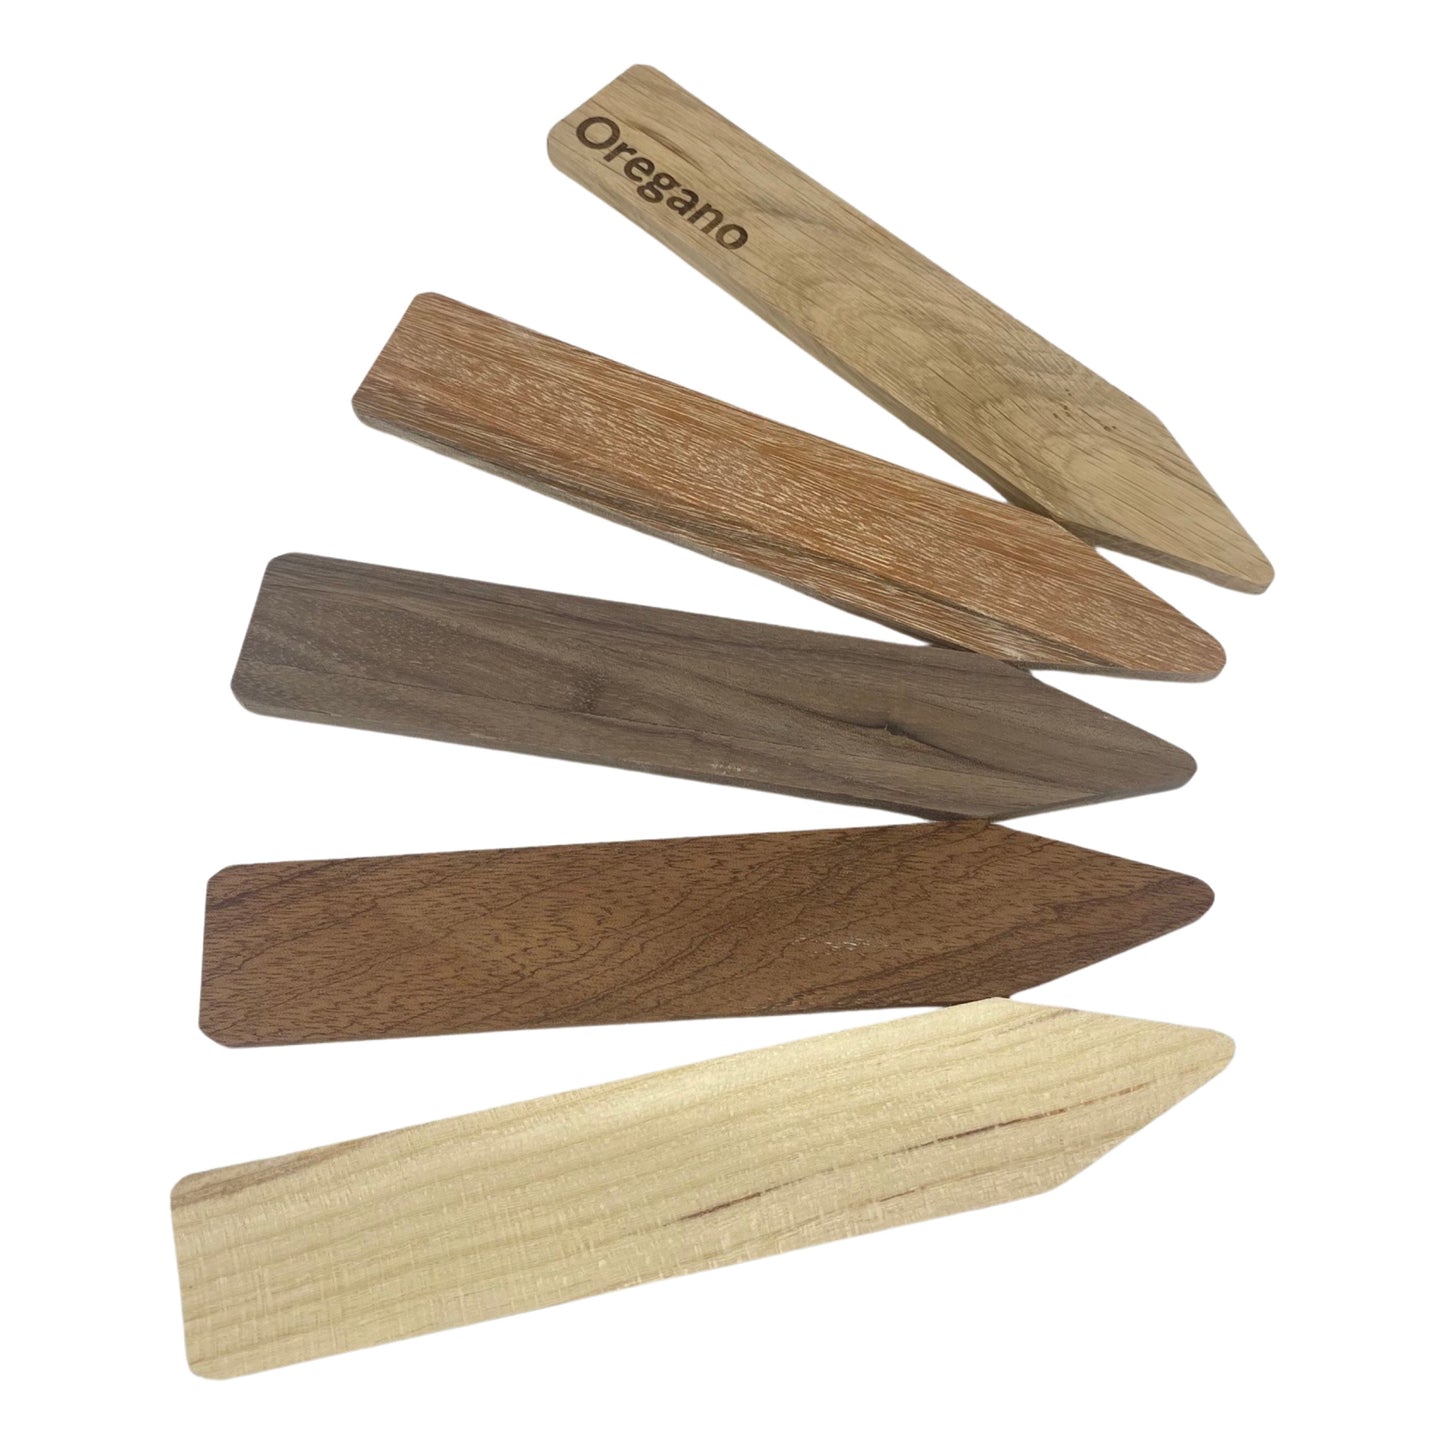 Personalised Minimalist Hardwood Plant Markers - Set of 5